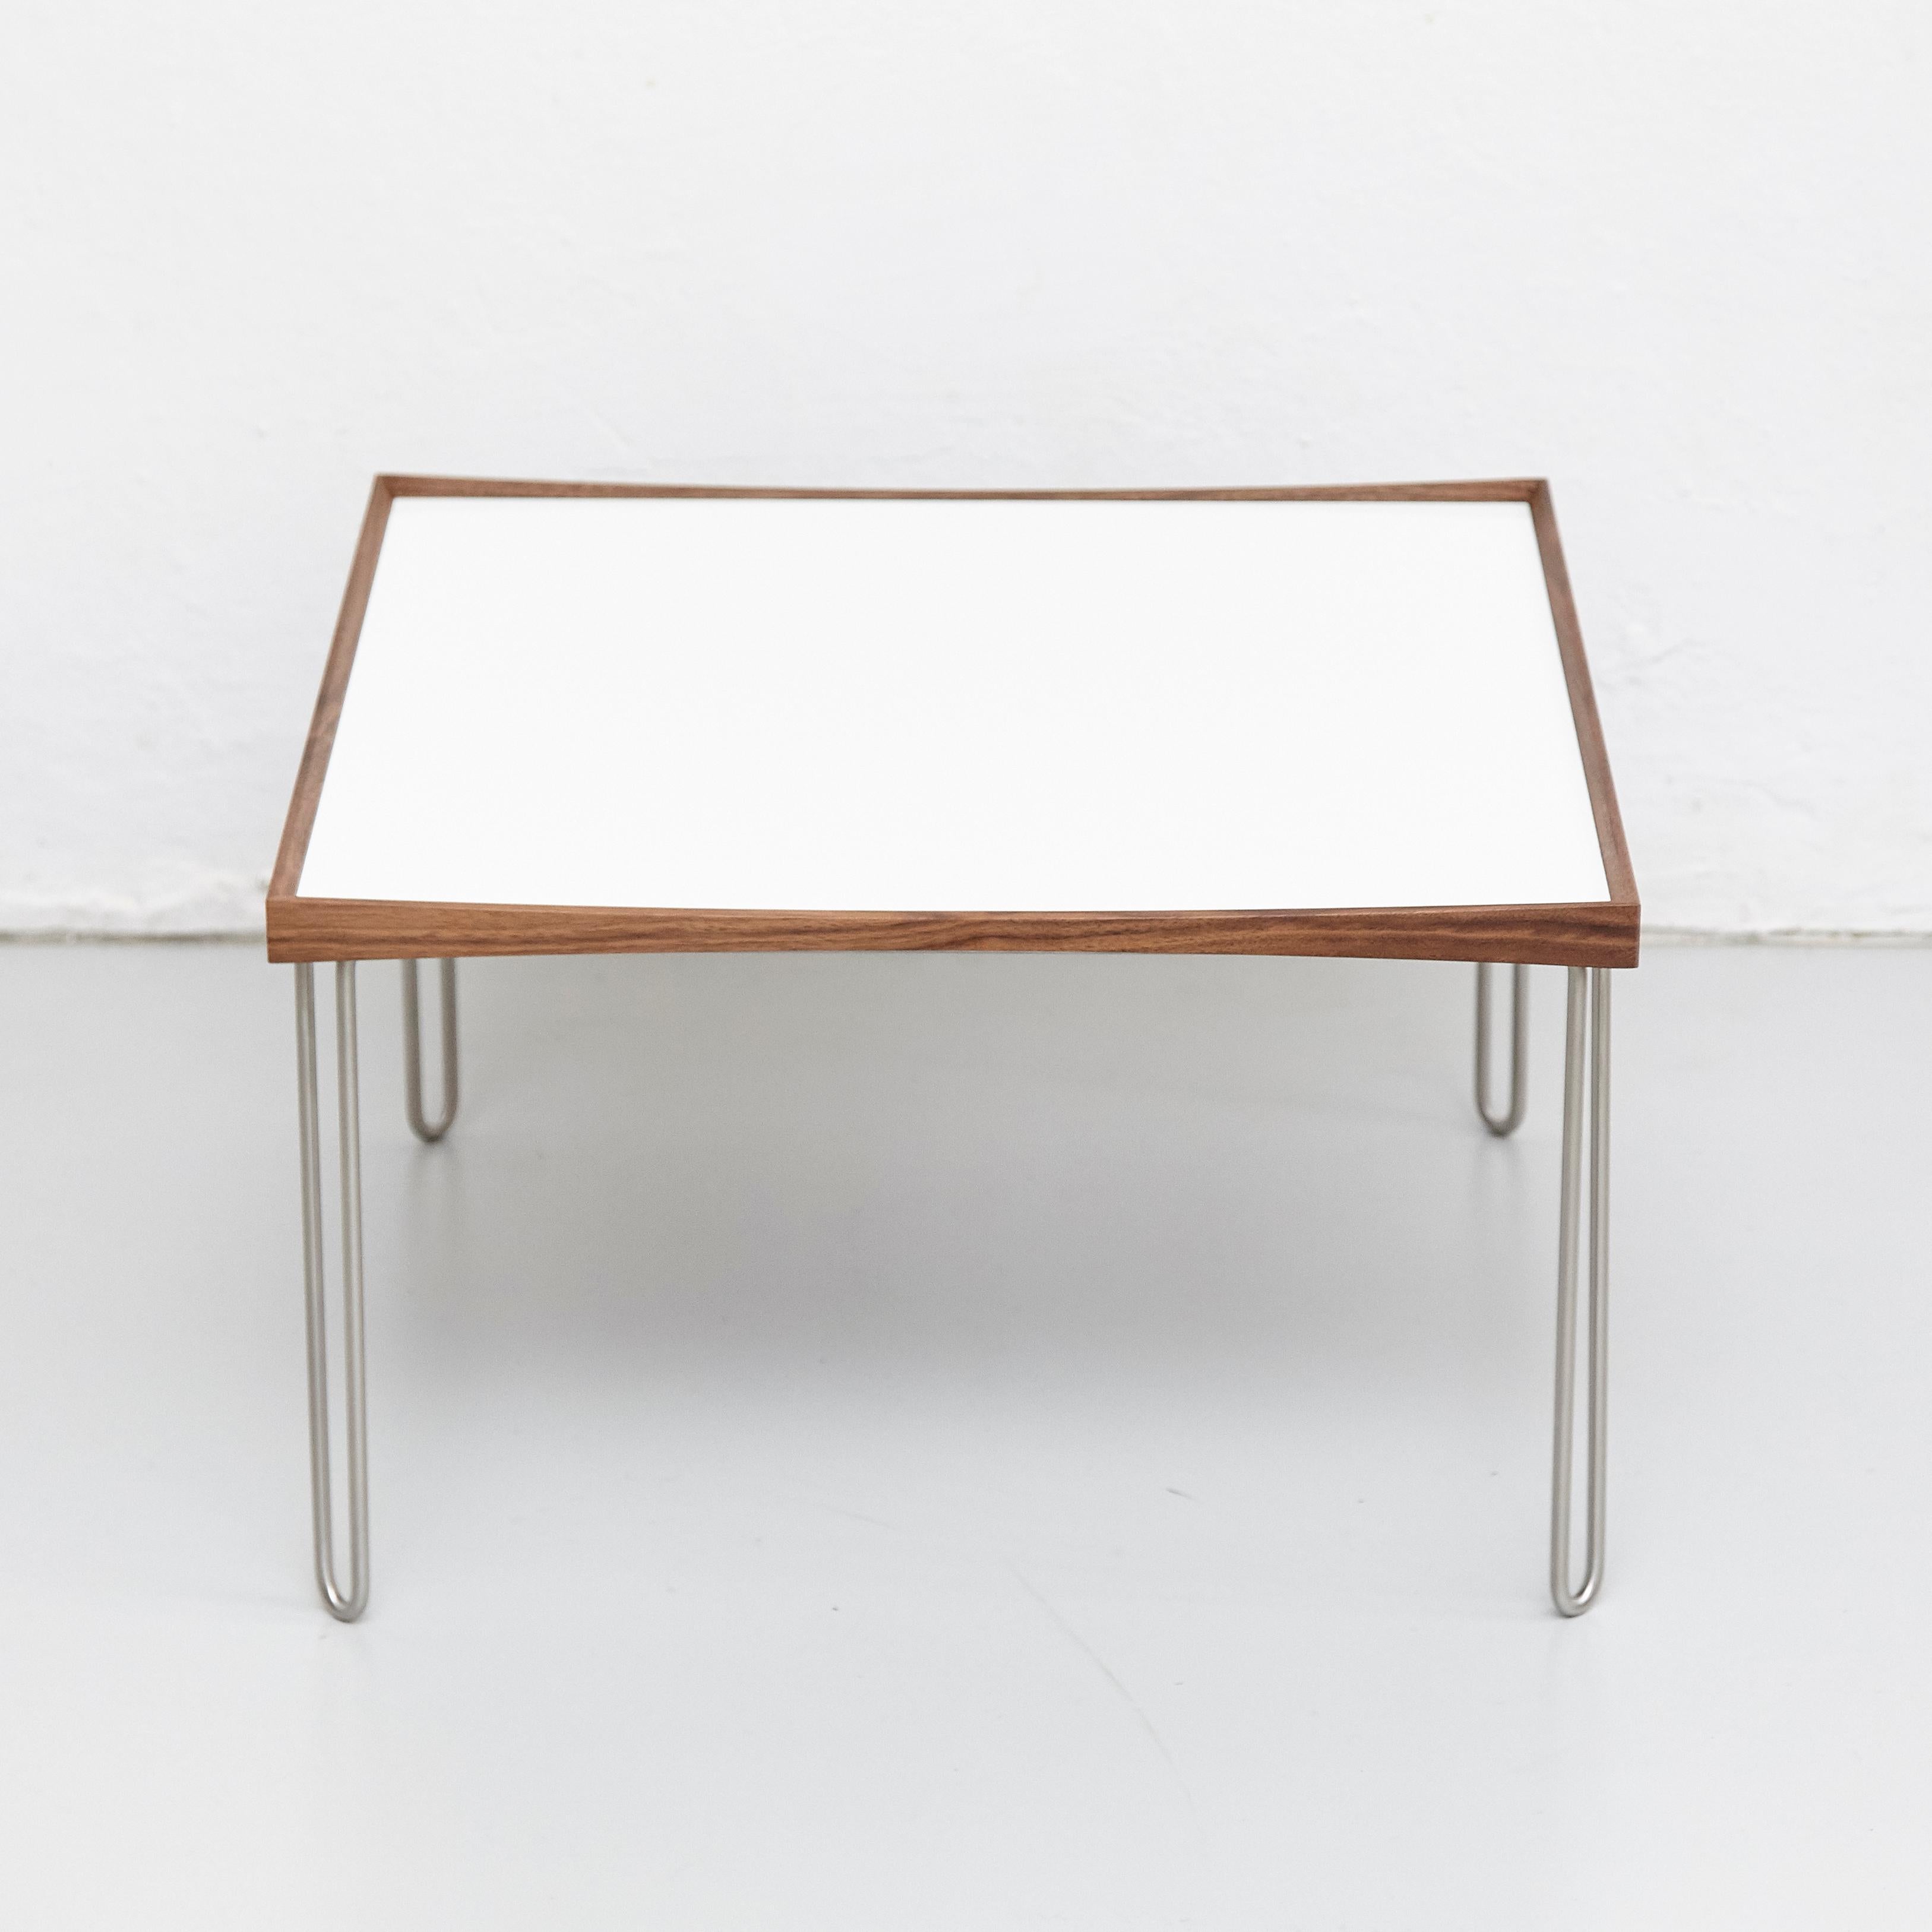 Table conçue par Finn Juhl en 1965, relancée en 2002.
Fabriqué par la Maison de Finn Juhl au Danemark.

La table Tray, conçue par Finn Juhl en 1965, est une évolution de ses célèbres Turning Trays, qui sont aujourd'hui fabriqués par